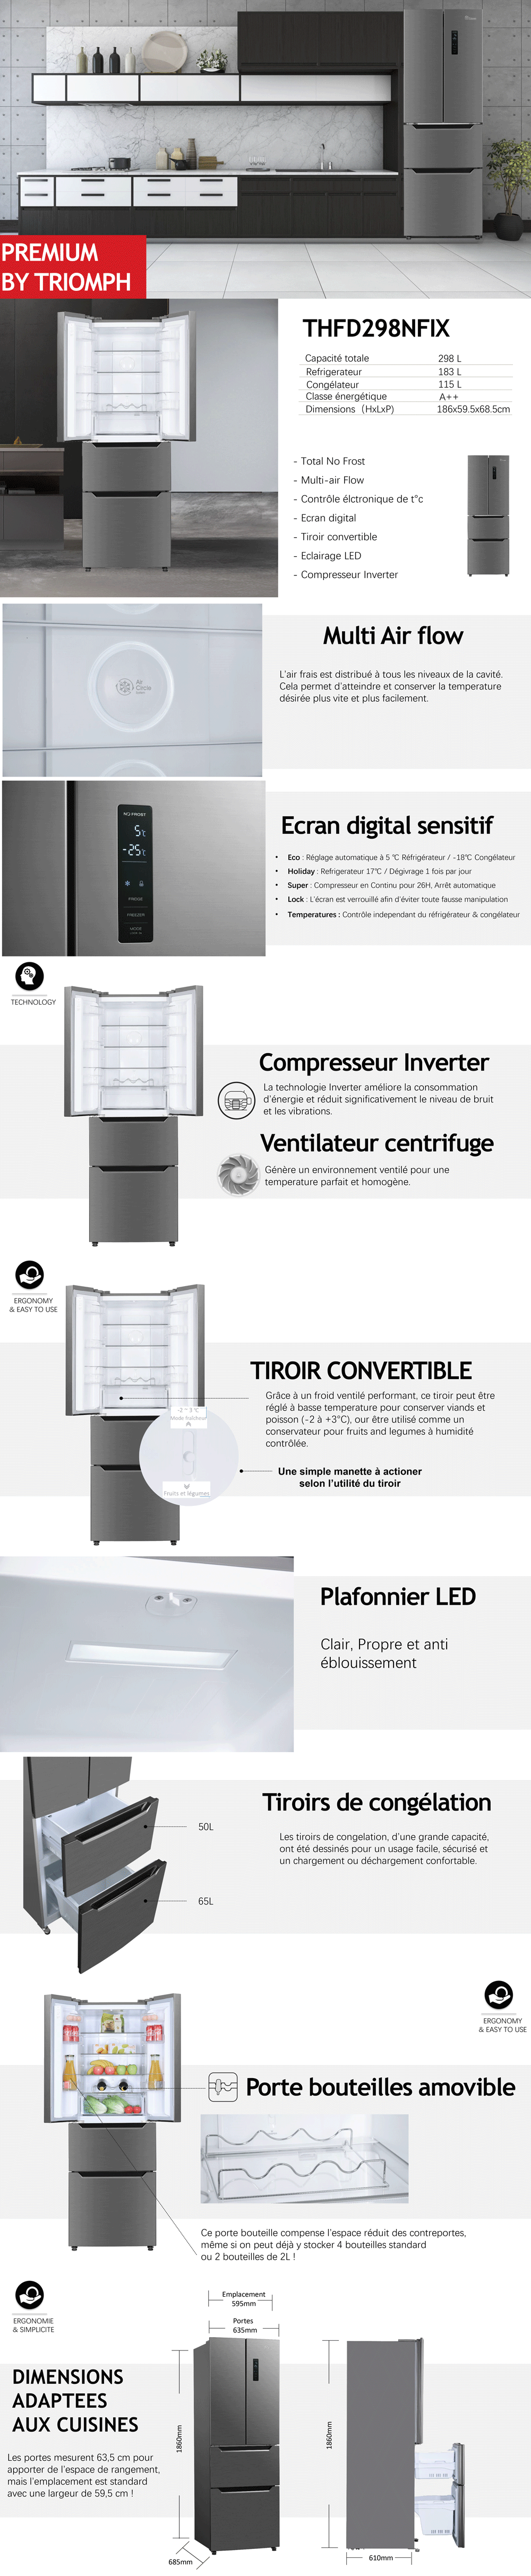 TRIOMPH THFD298NFIX - Réfrigérateur multi-portes - 298L (183+115) - Froid ventilé - Classe A++ - L 59.5cm x H 183 cm - Inox Look